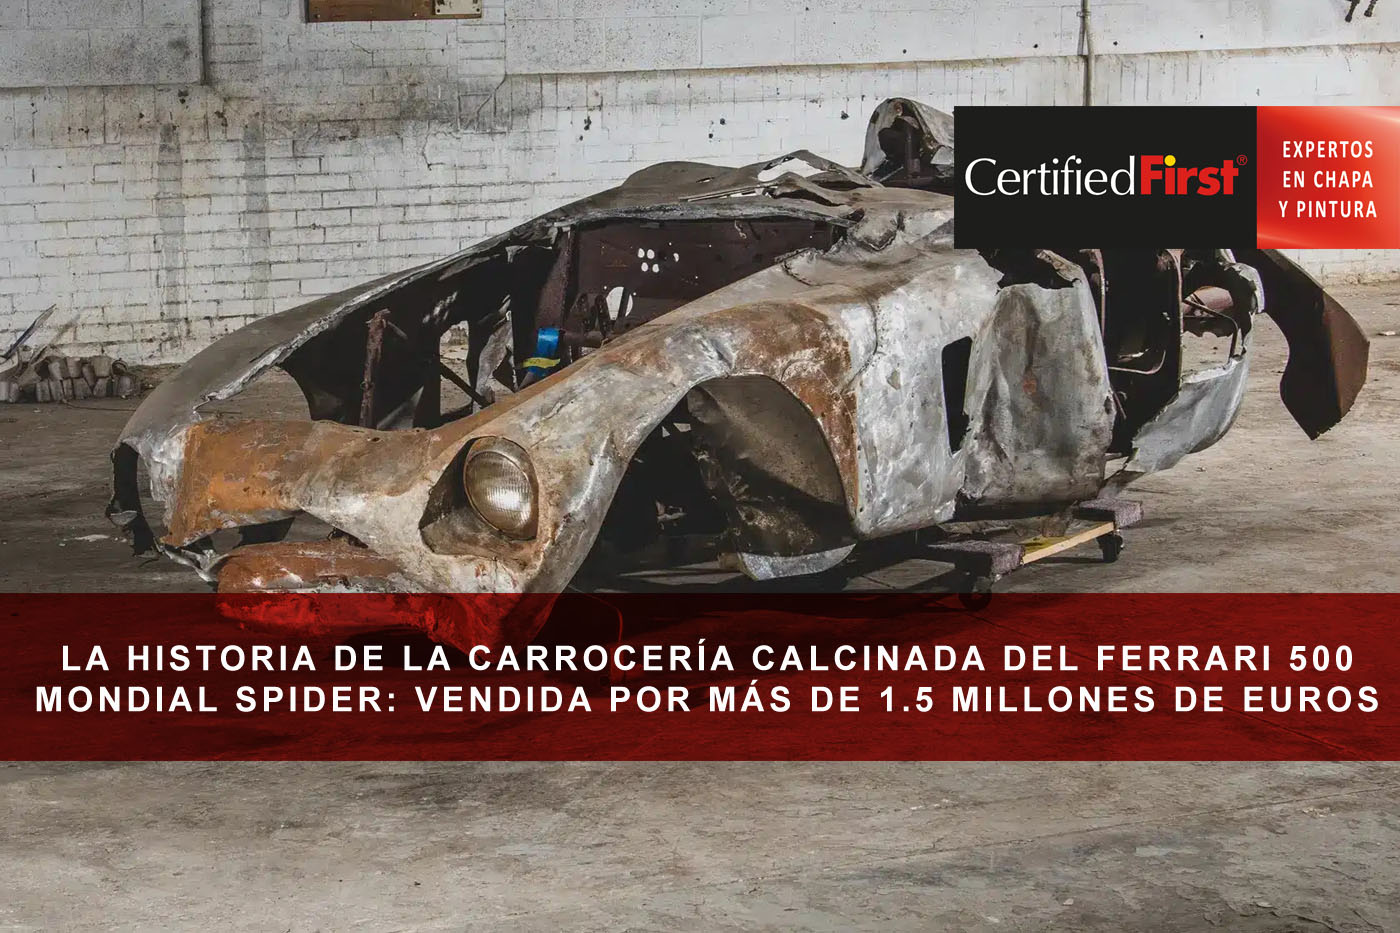 La historia de la carrocería calcinada del Ferrari 500 Mondial Spider: vendida por 1.5 millones de euros